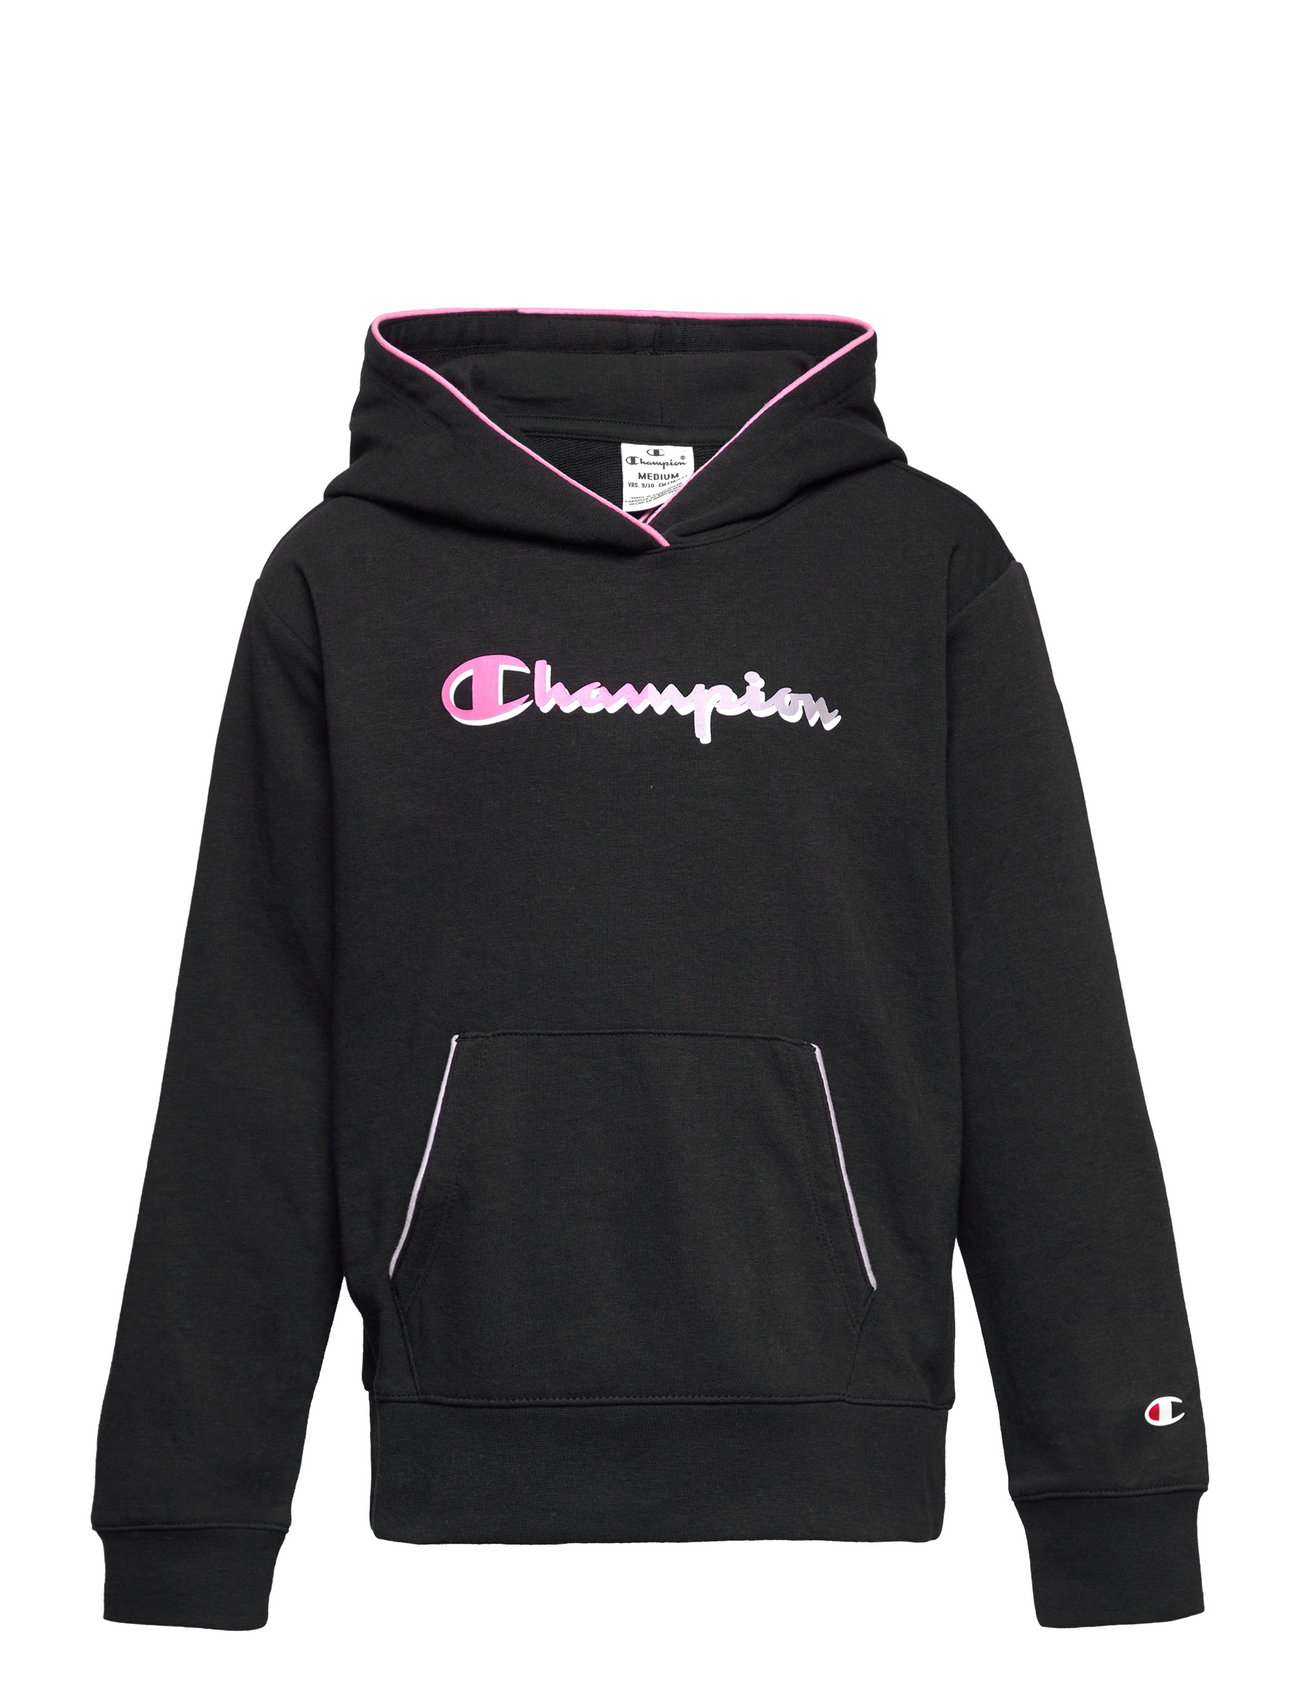 Champion Hooded Sweatshirt (Black Beauty), 157.50 kr Stort udvalg af designer | Booztlet.com